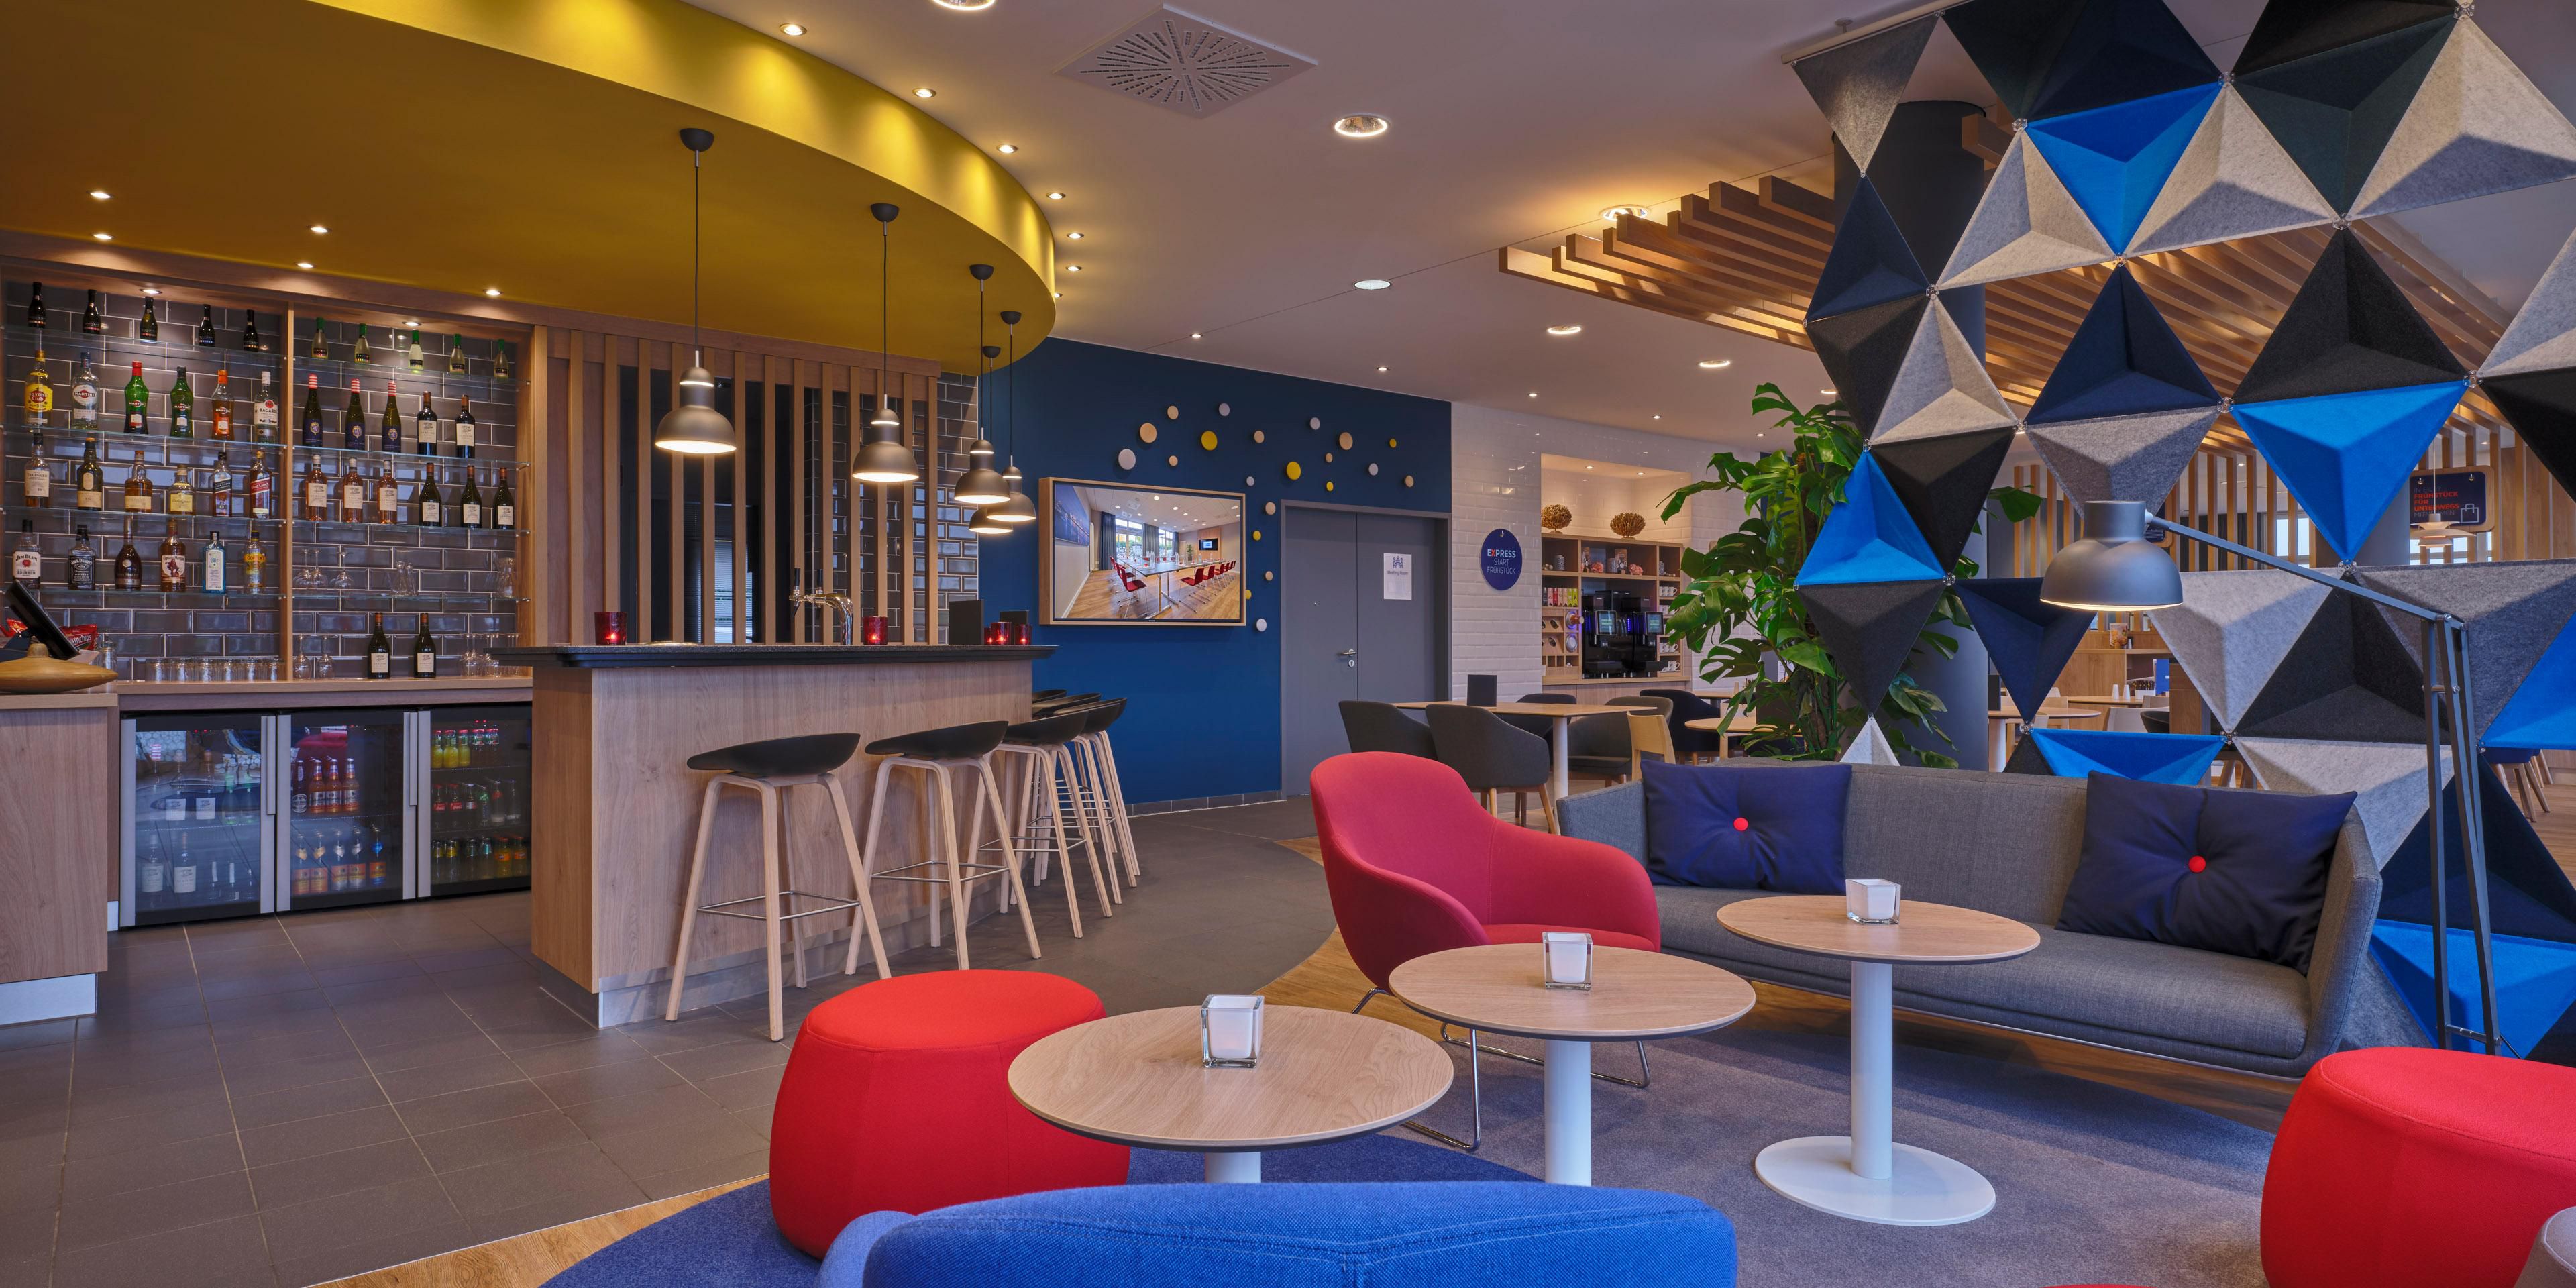 Entdecken Sie jetzt das neuartige Open-Lobby-Konzept. Entspannen Sie jederzeit bei Kaffee oder Snacks und arbeiten Sie in unserer einladenden Open Lobby.